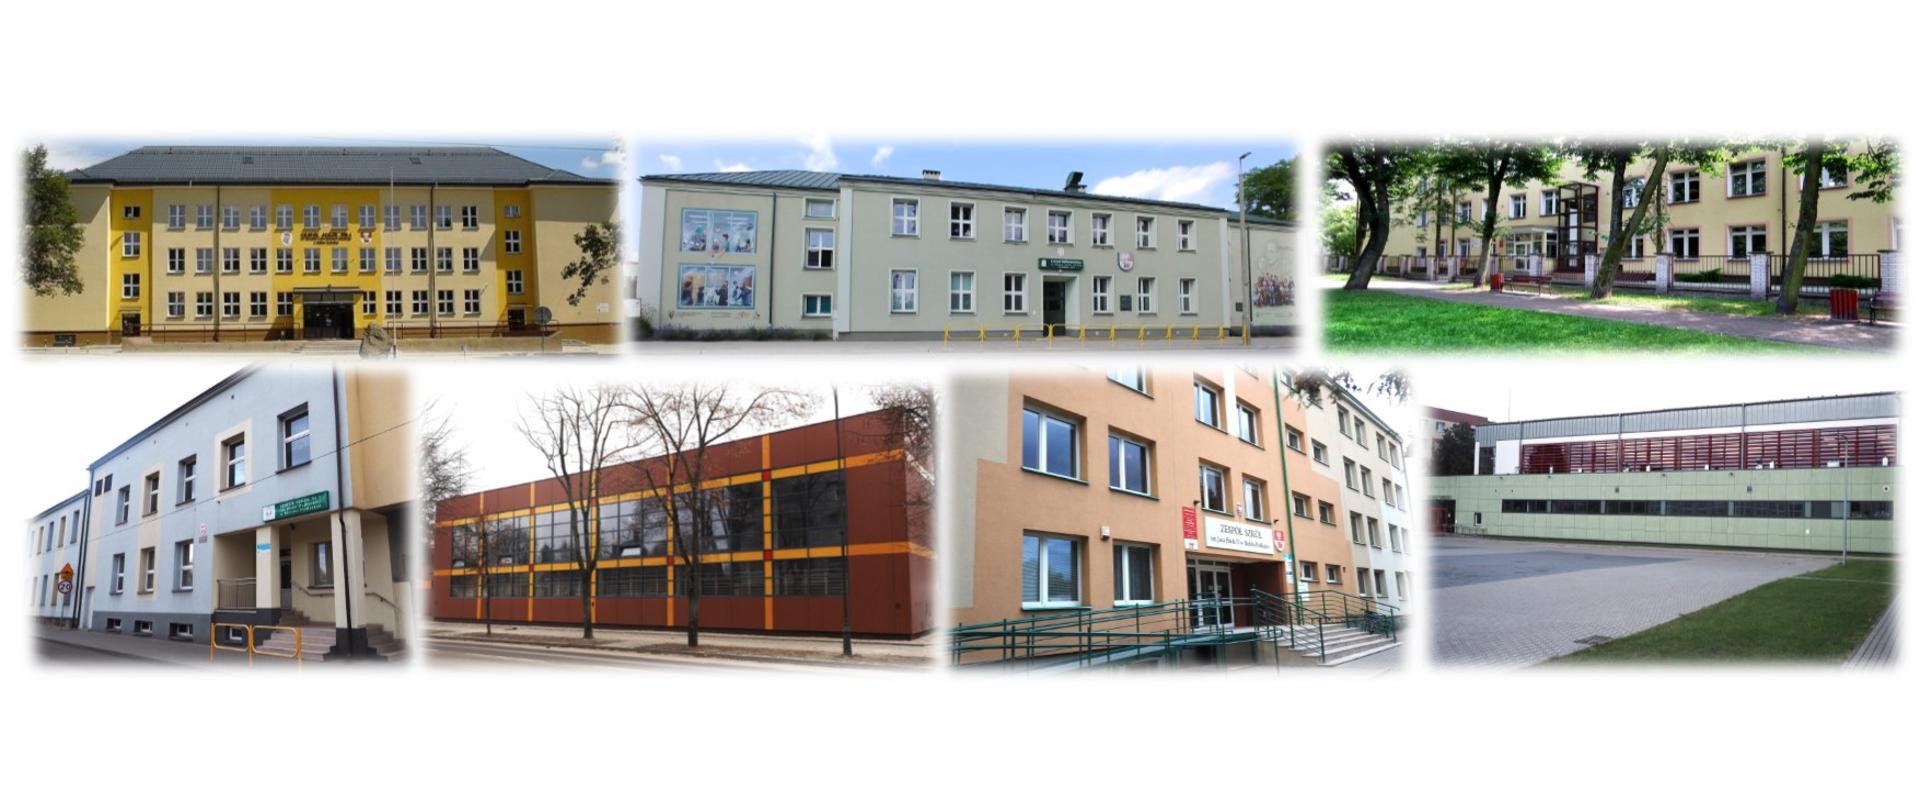 Szkoły prowadzone przez Powiat Bielski - zdjęcie ilustracyjne